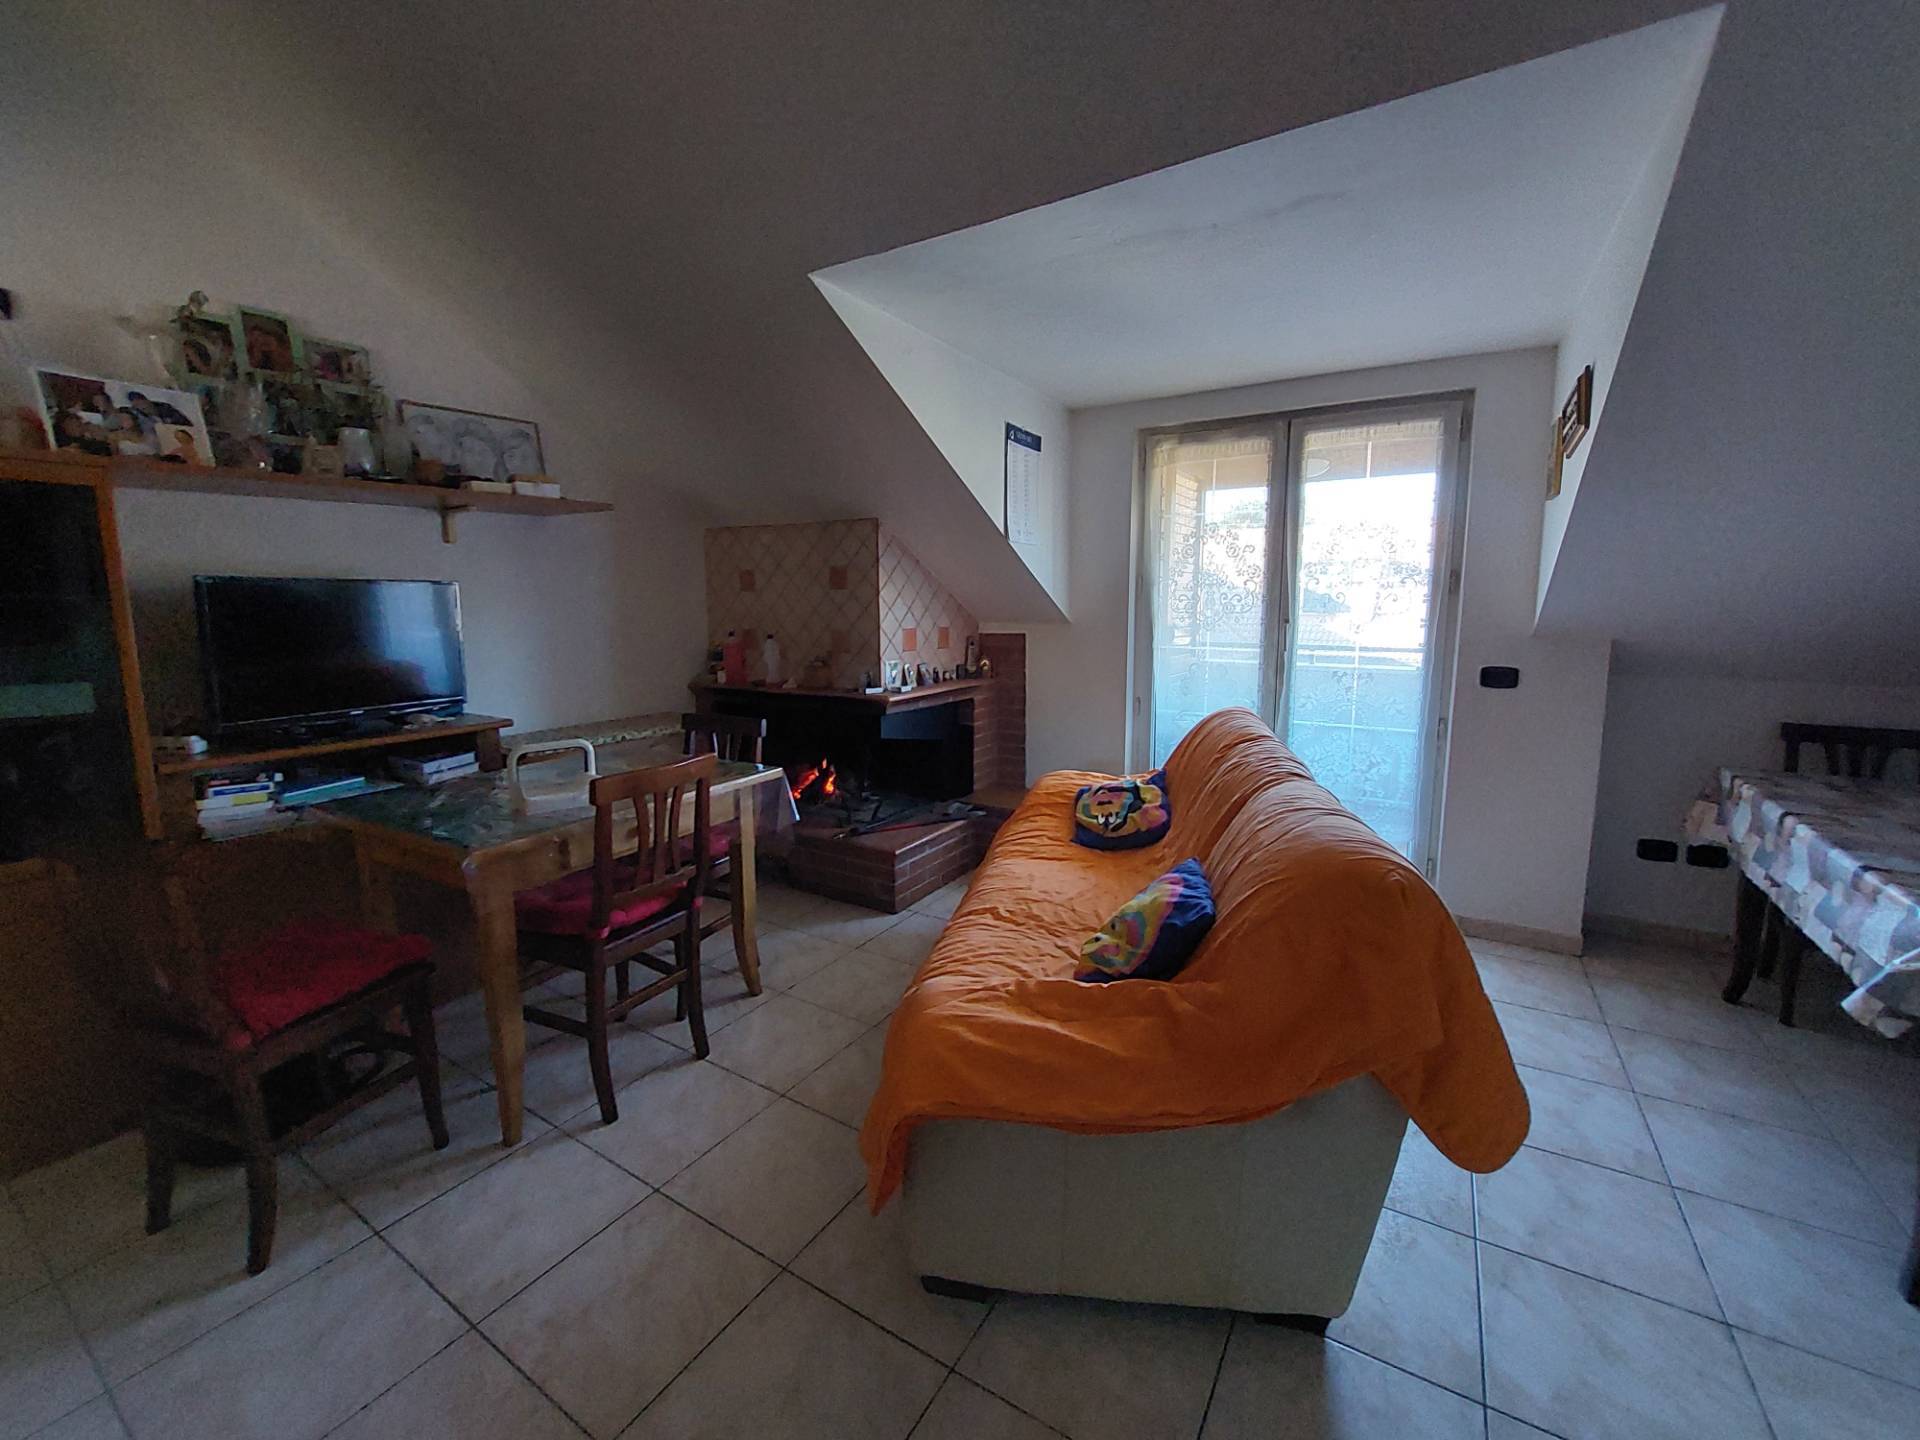 Appartamento in vendita a Roccafluvione, 5 locali, prezzo € 70.000 | CambioCasa.it